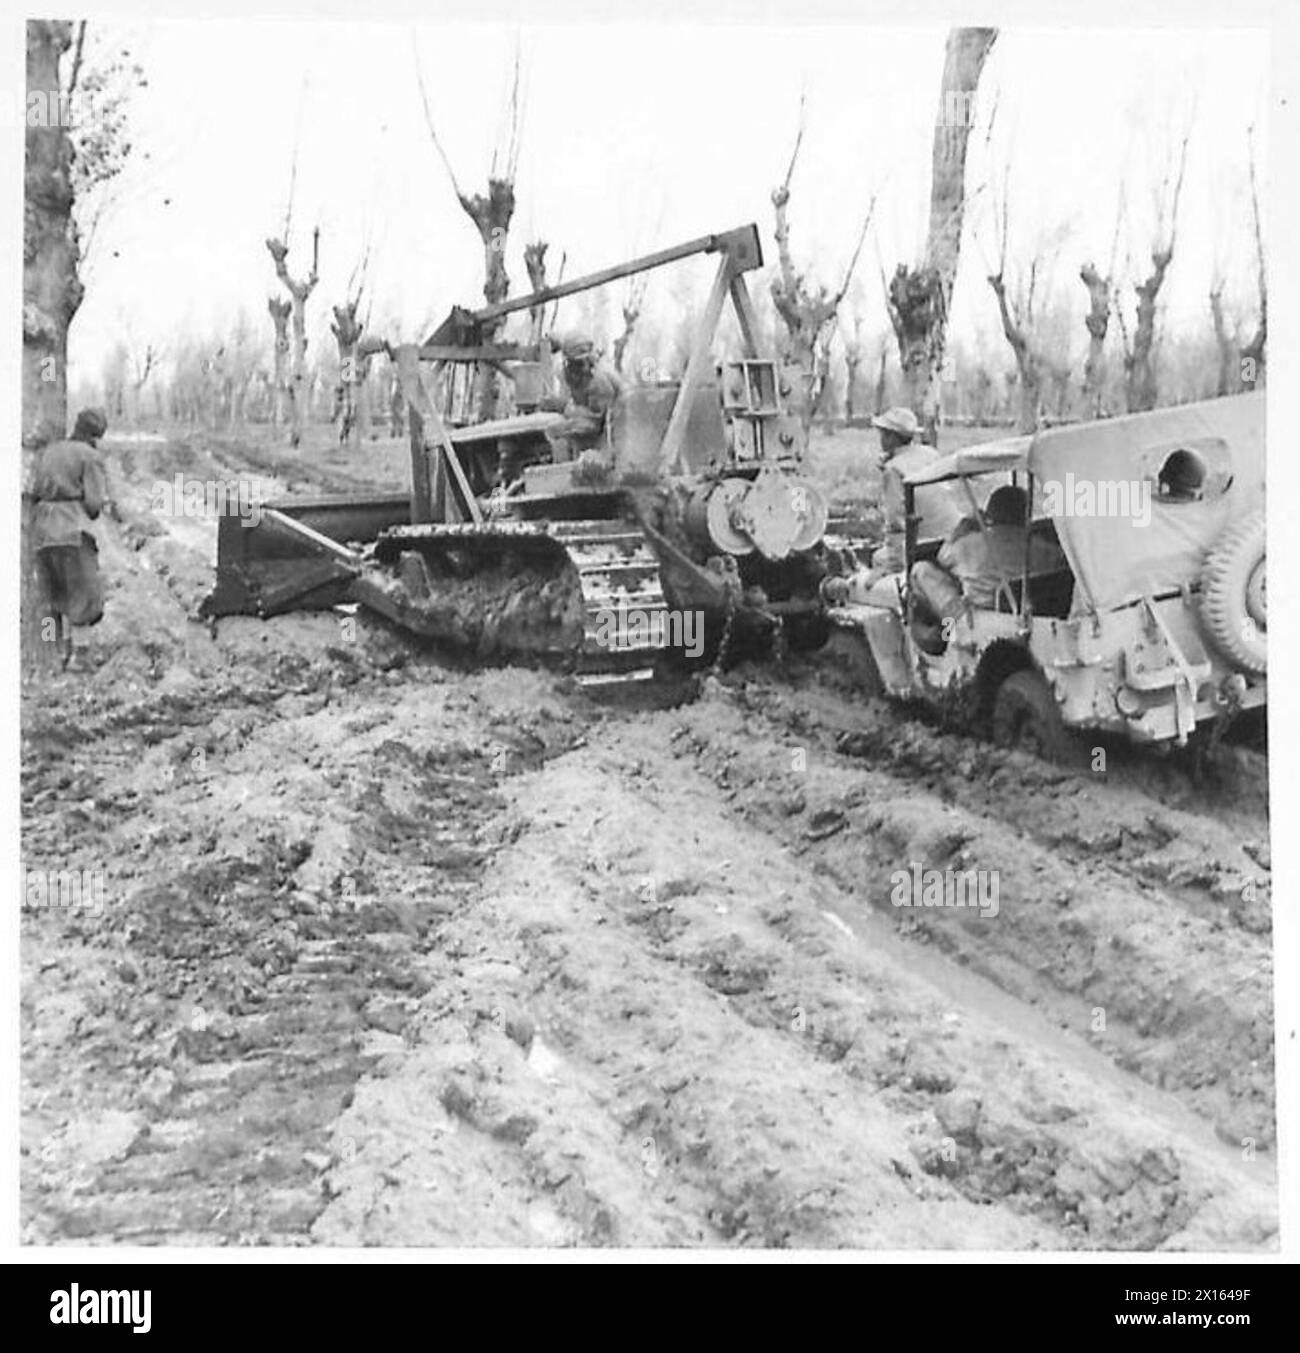 ITALIA: QUINTO ESERCITO (VARIE) - un trattore caterpillar americano tenta di spostare parte del fango da una corsia della Fifth Army Sector British Army Foto Stock